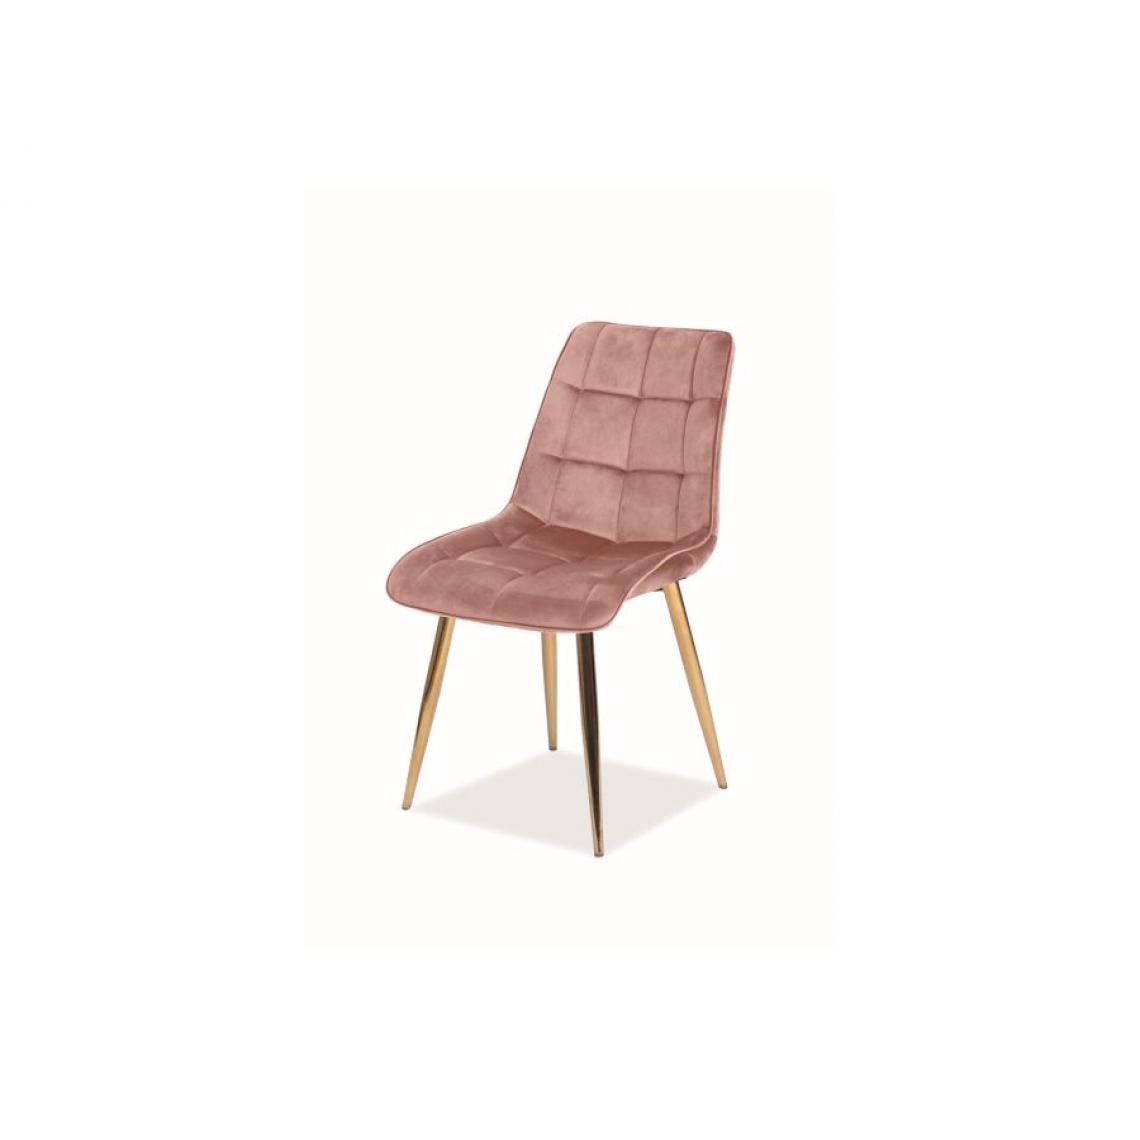 Hucoco - MASI | Chaise moderne matelassé pour salon | Dimensions : 89x51x44 cm | Rembourrage en velours | Dossier matelassé - Rose - Chaises